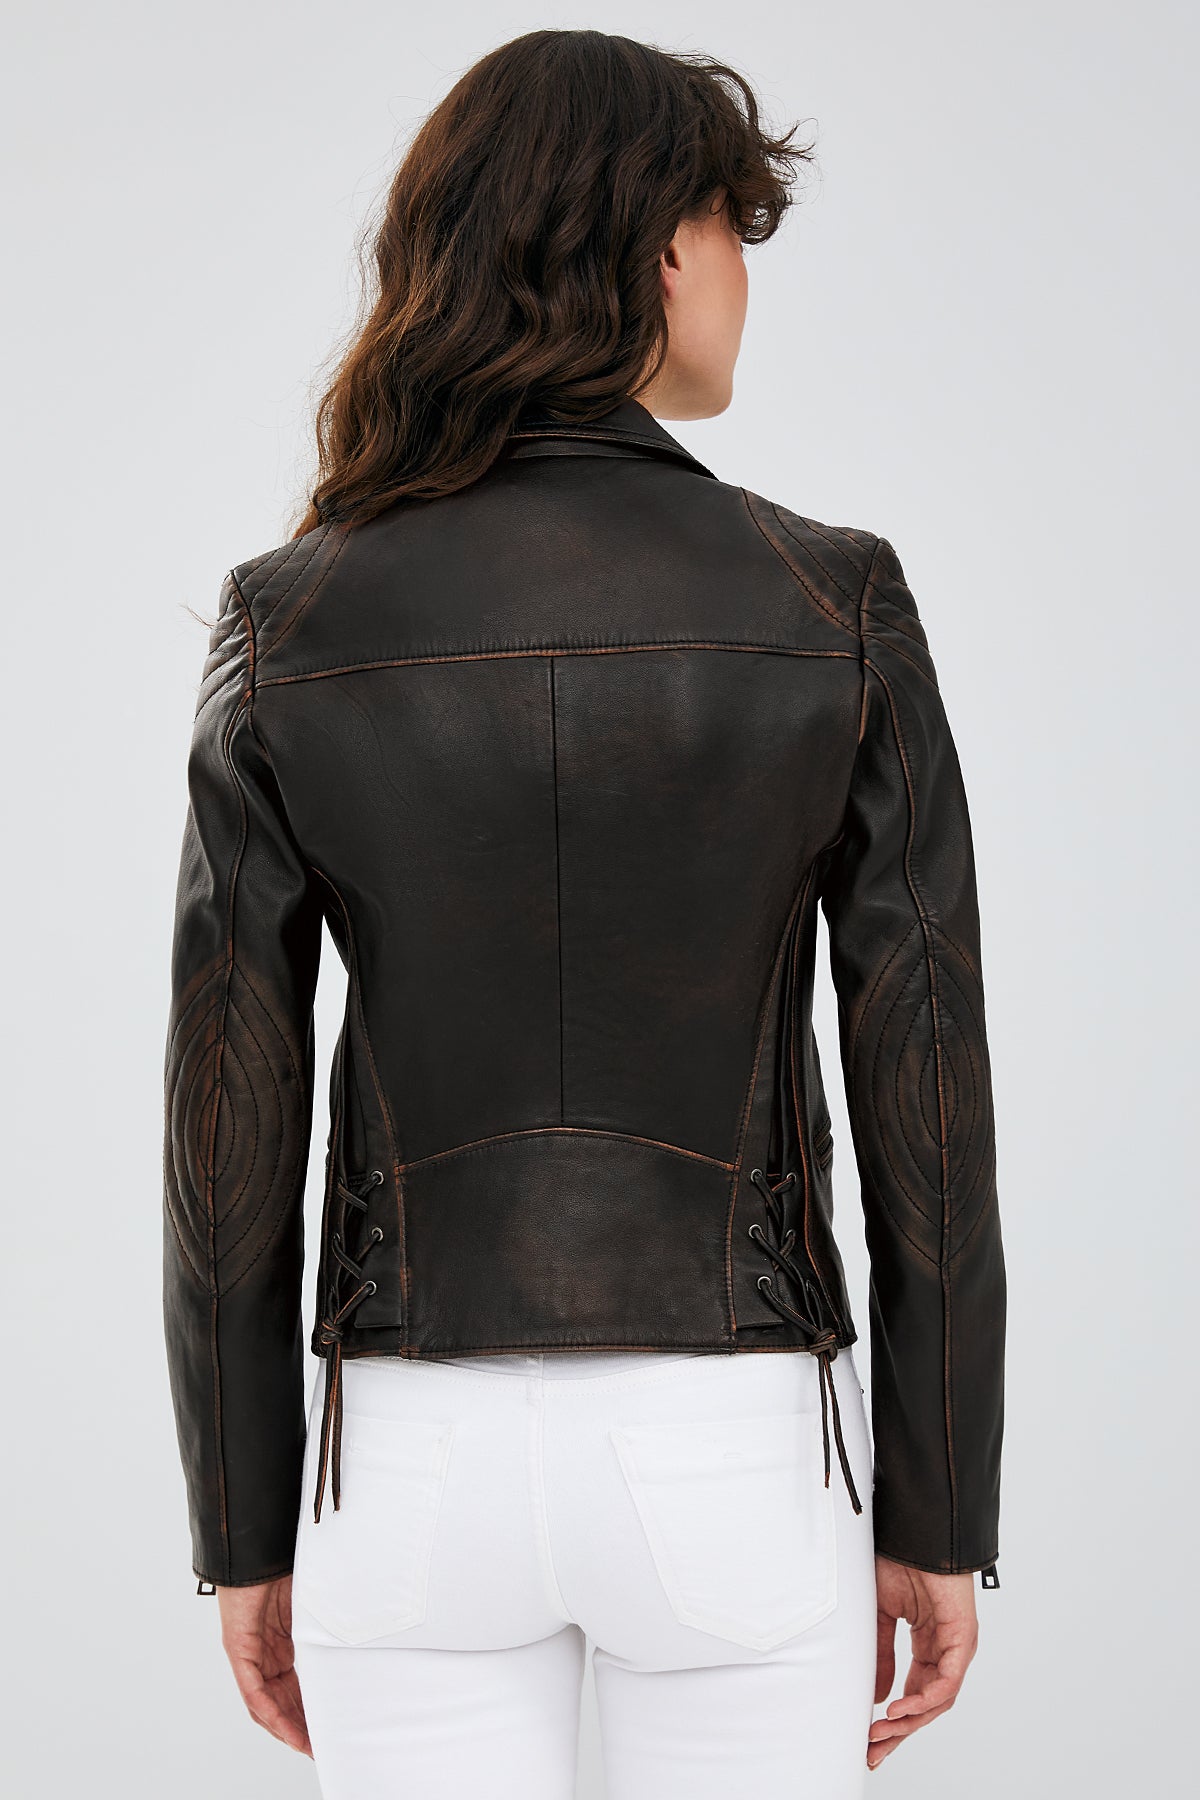 Xuma Kadın Kahverengi Biker Deri Ceket